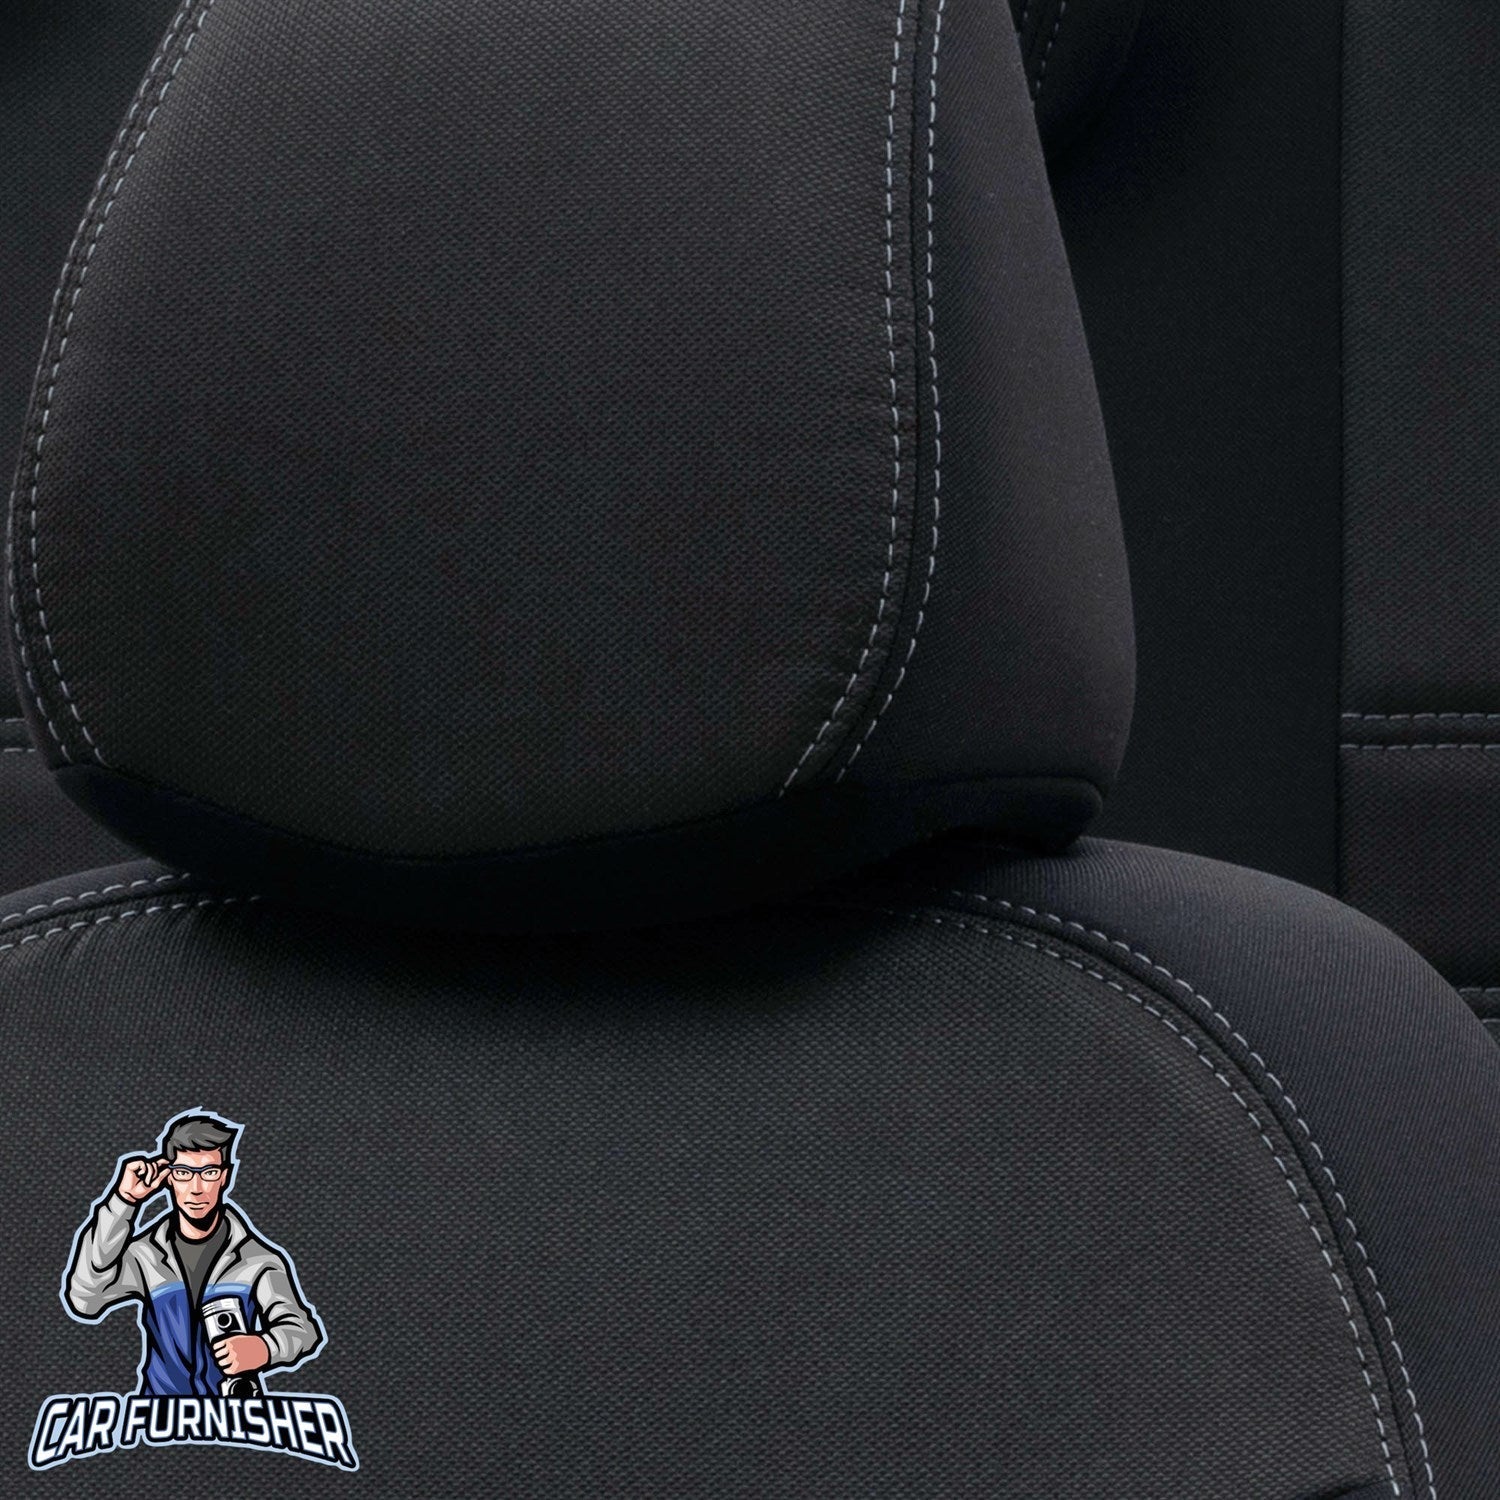 Fiat Palio Seat Covers Original Jacquard Design Black Jacquard Fabric